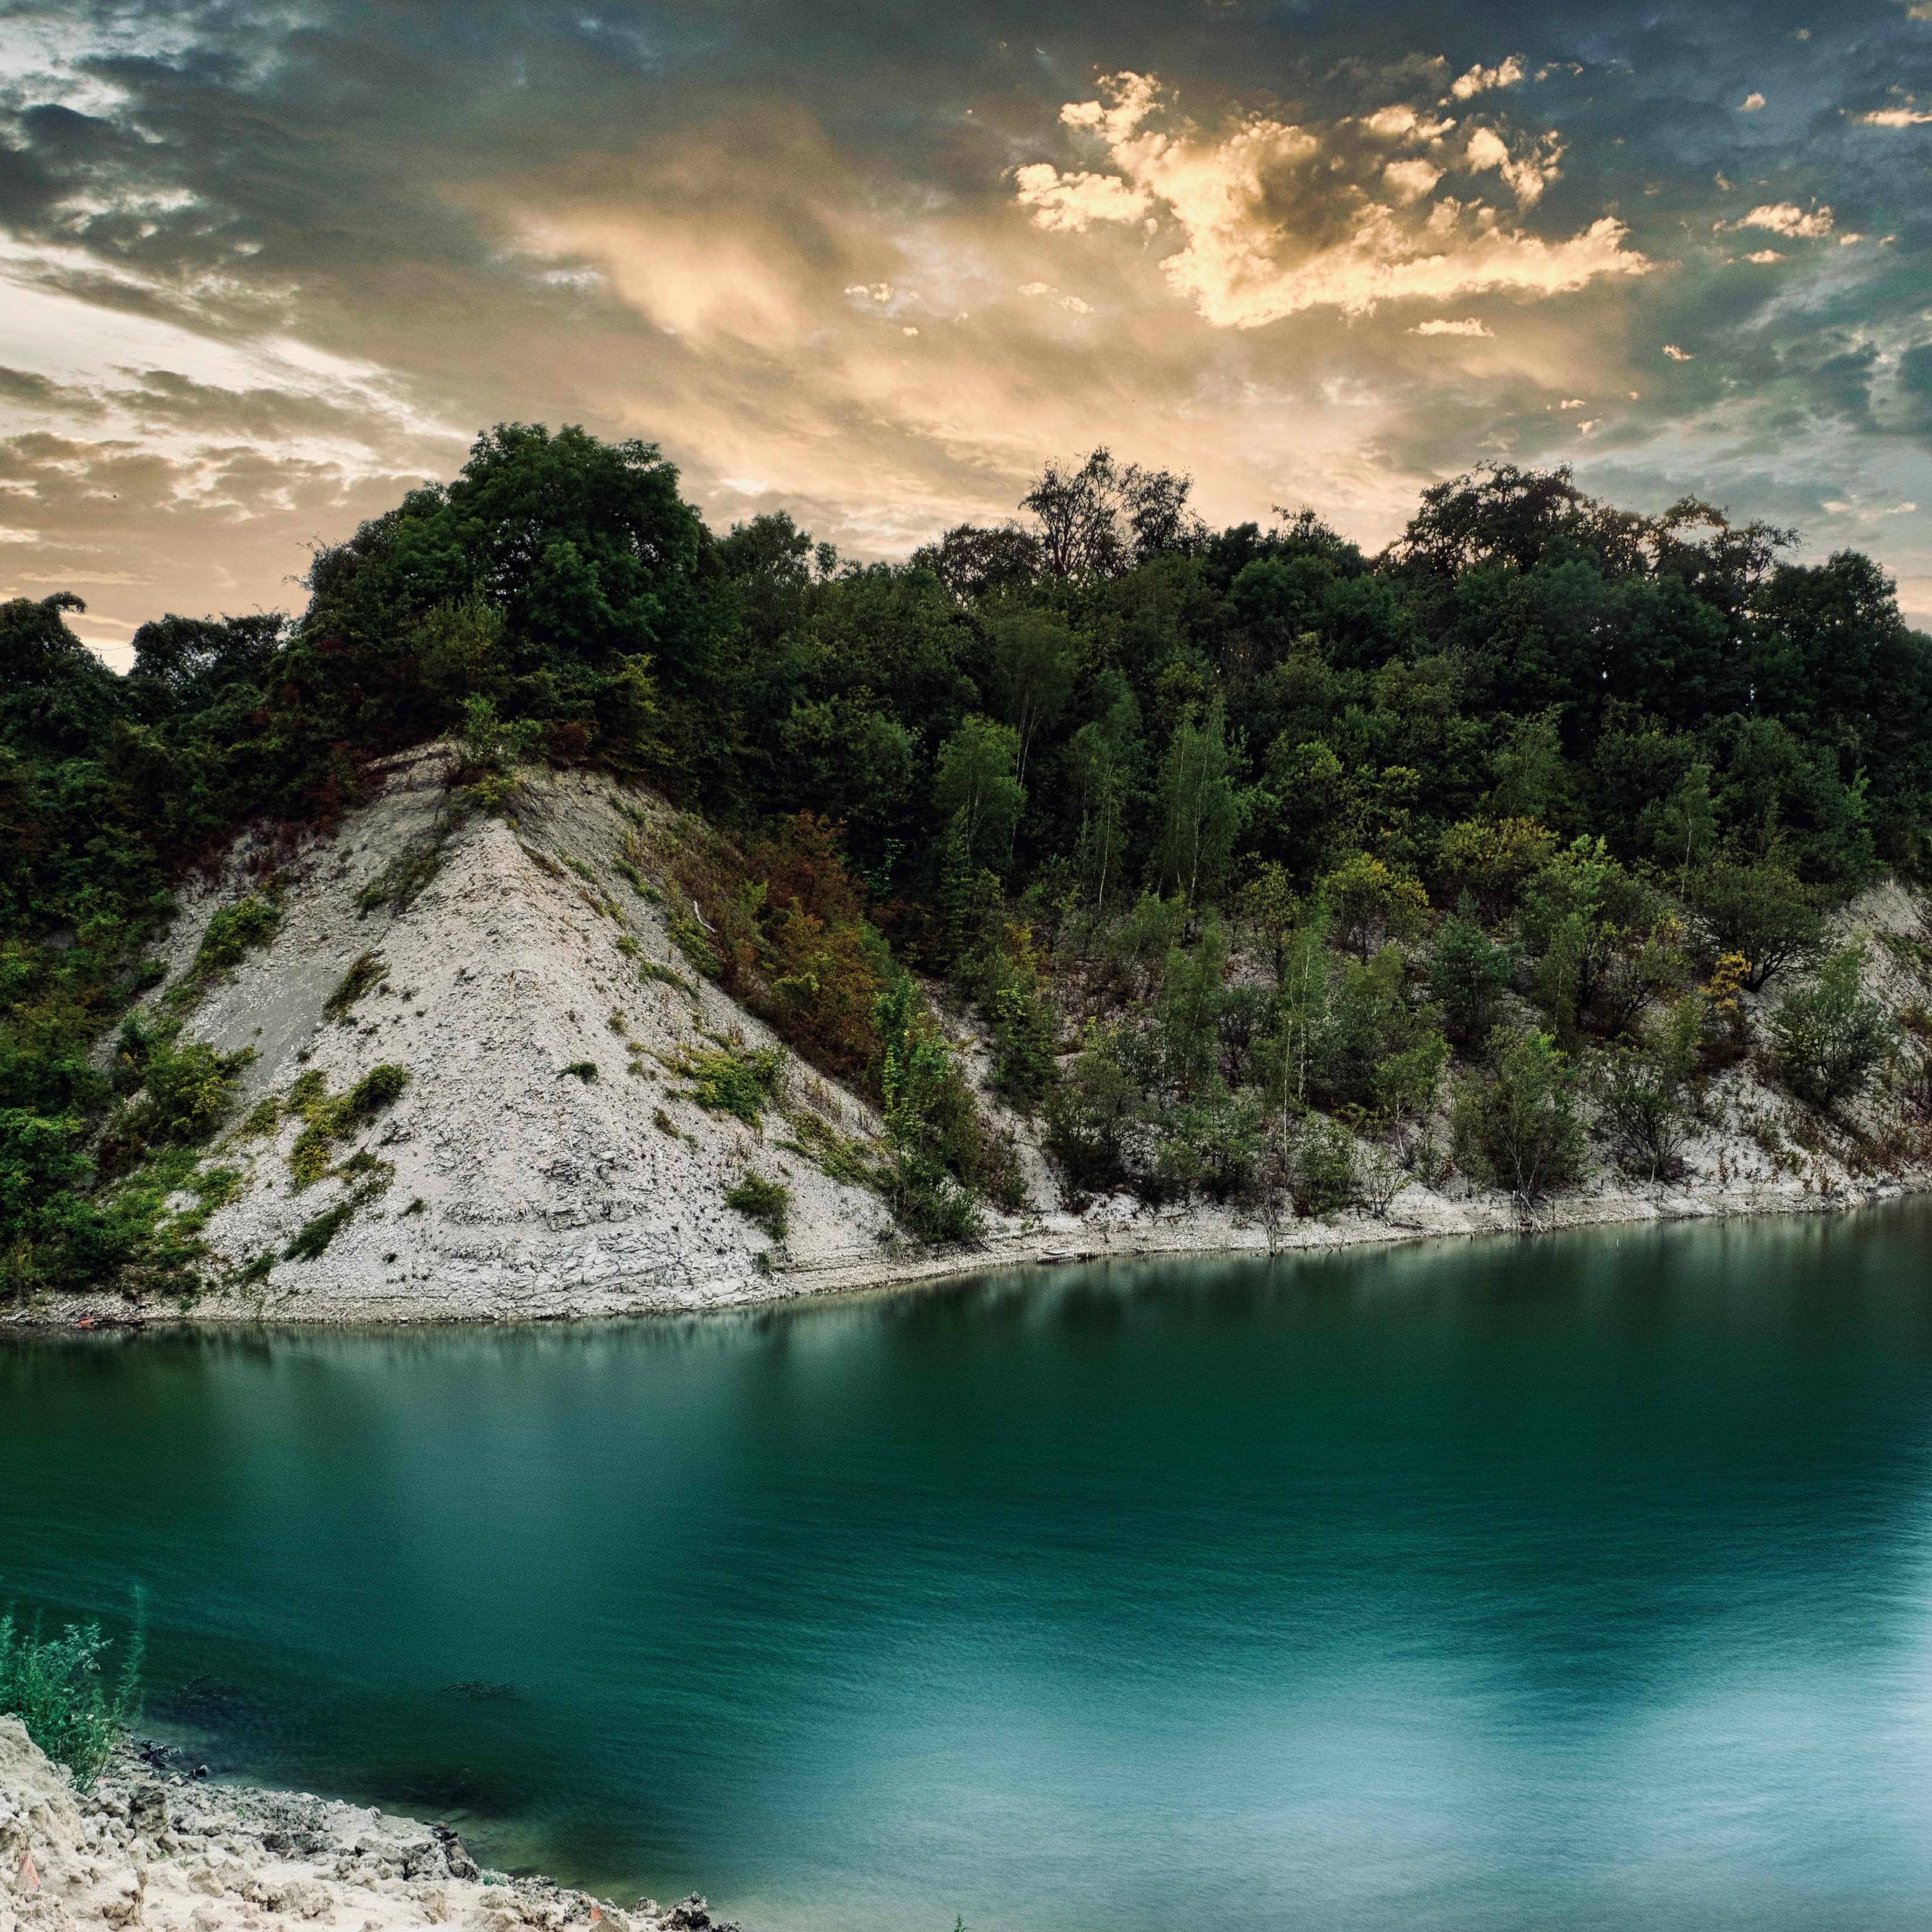 In der Abenddämmerung: Der türkisfarbene See in der Kiesgrube, umgeben von mit Bäumen bewachse-nen Kalkwänden.